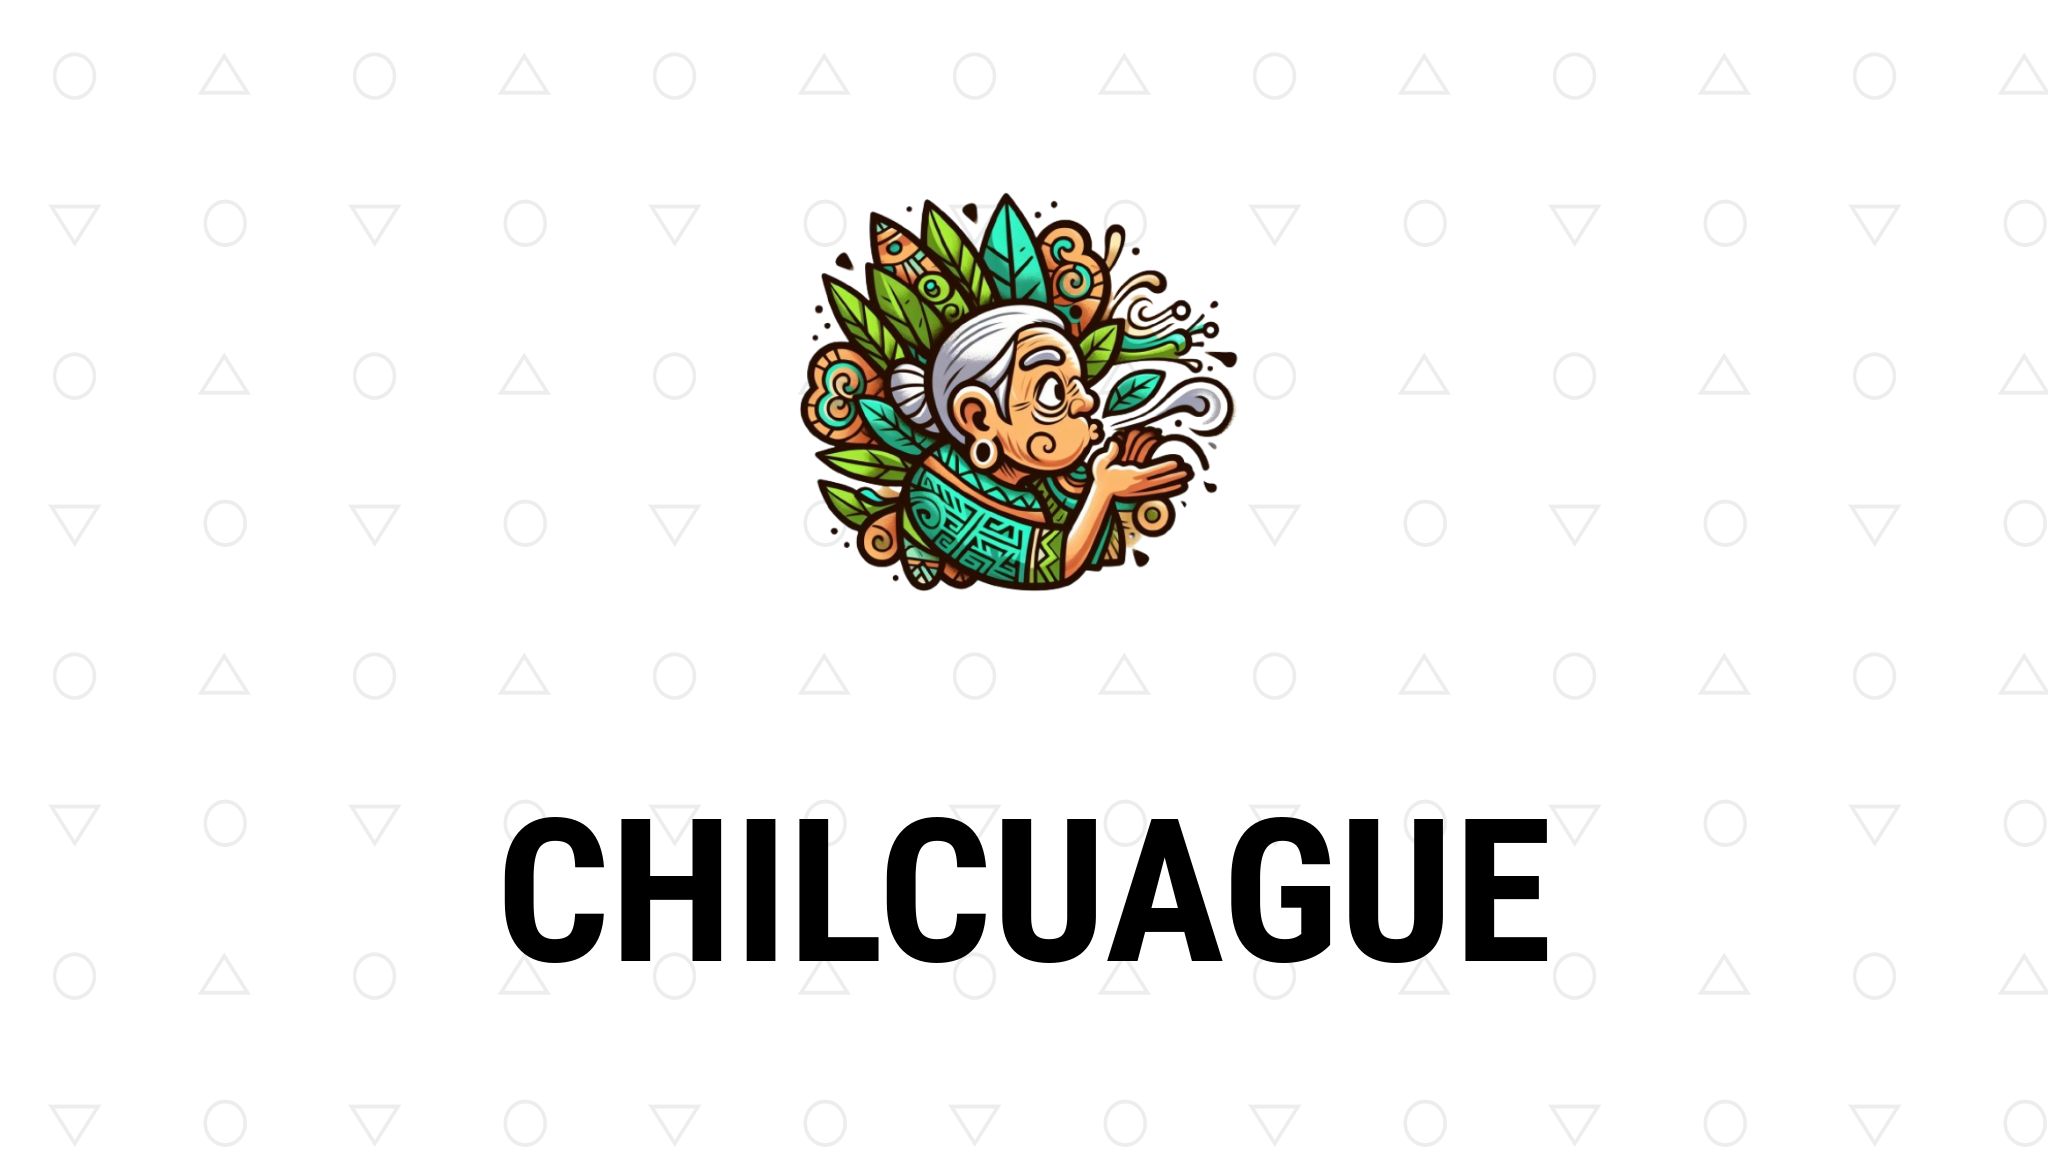 Chilcuague – Propiedades y remedios naturales